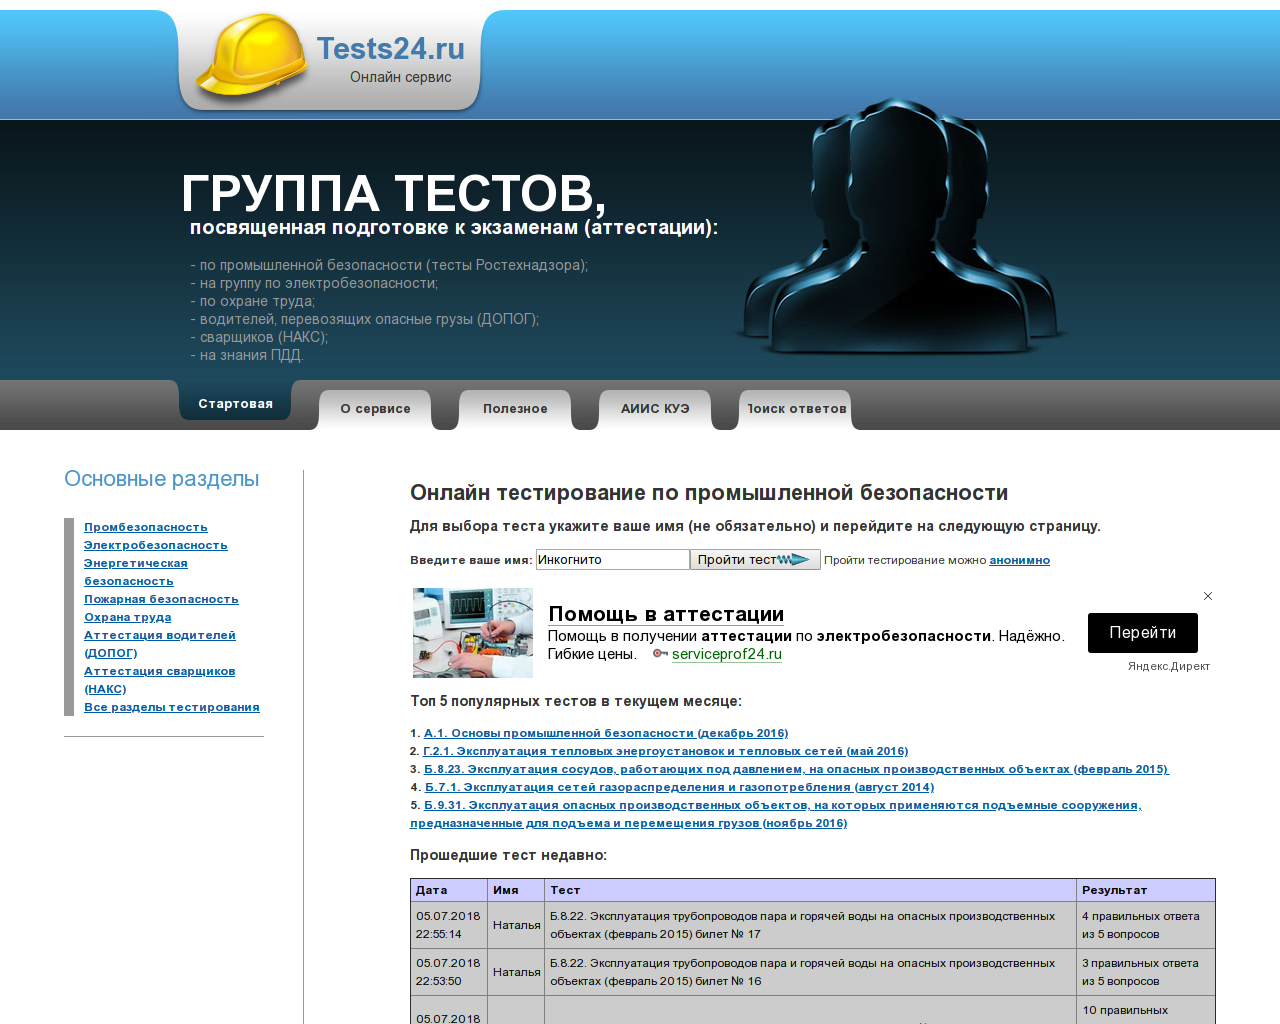 Изображение сайта tests24.ru в разрешении 1280x1024